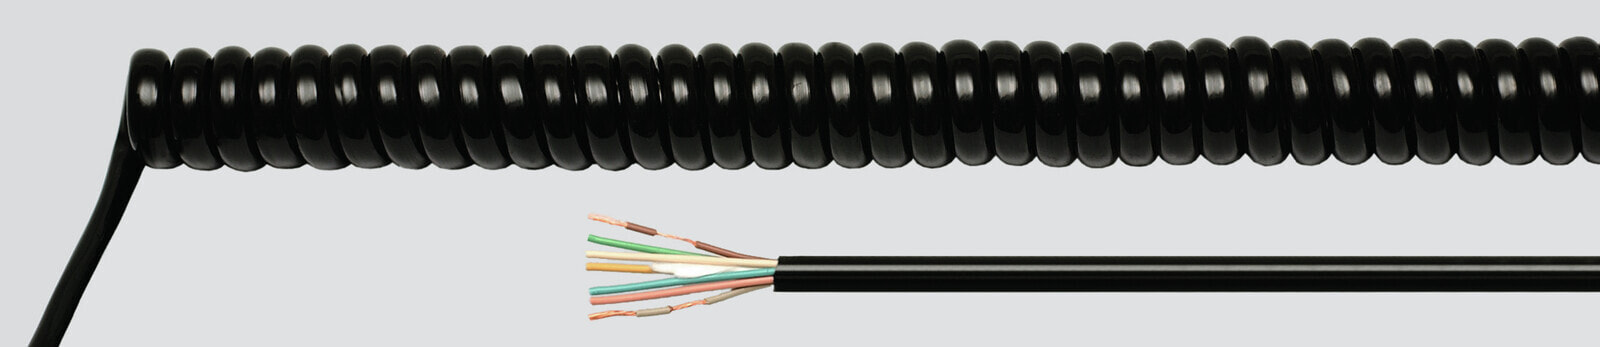 Helukabel 86335 - Low voltage cable - Black - Cooper - 0.75 mm² - 156.6 kg/km - -25 - 70 °C